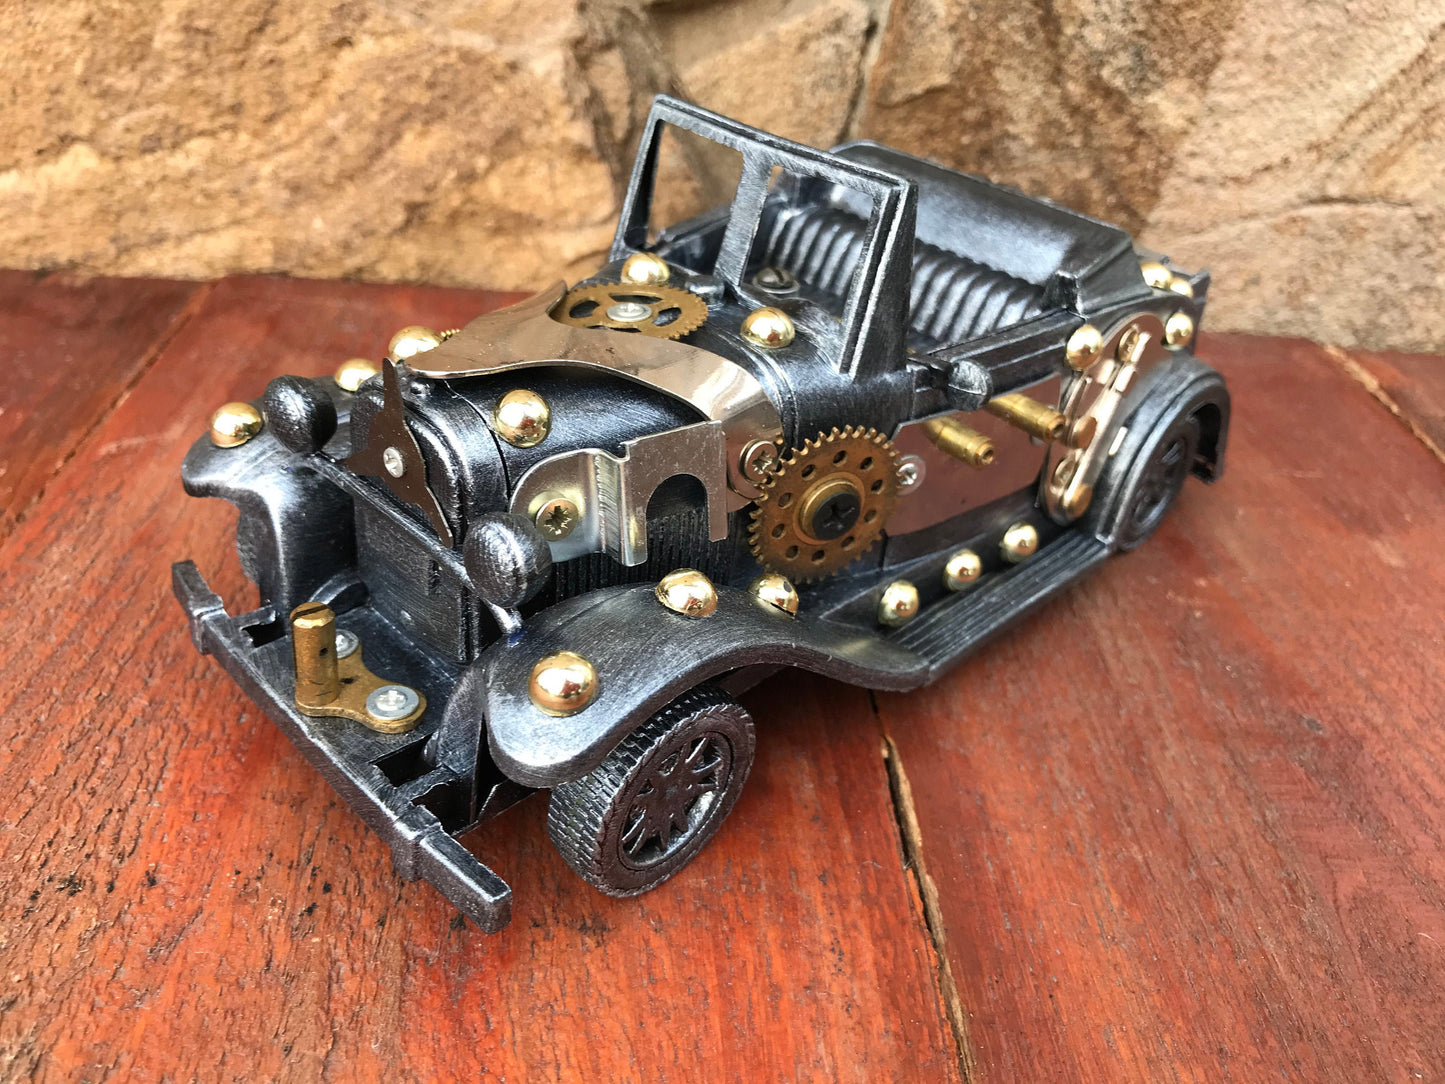 Steampunk car, car, retro car, industrial car, steampunk gift, DIY, steampunk machine, gears, industrial gift, junk art, car collectables